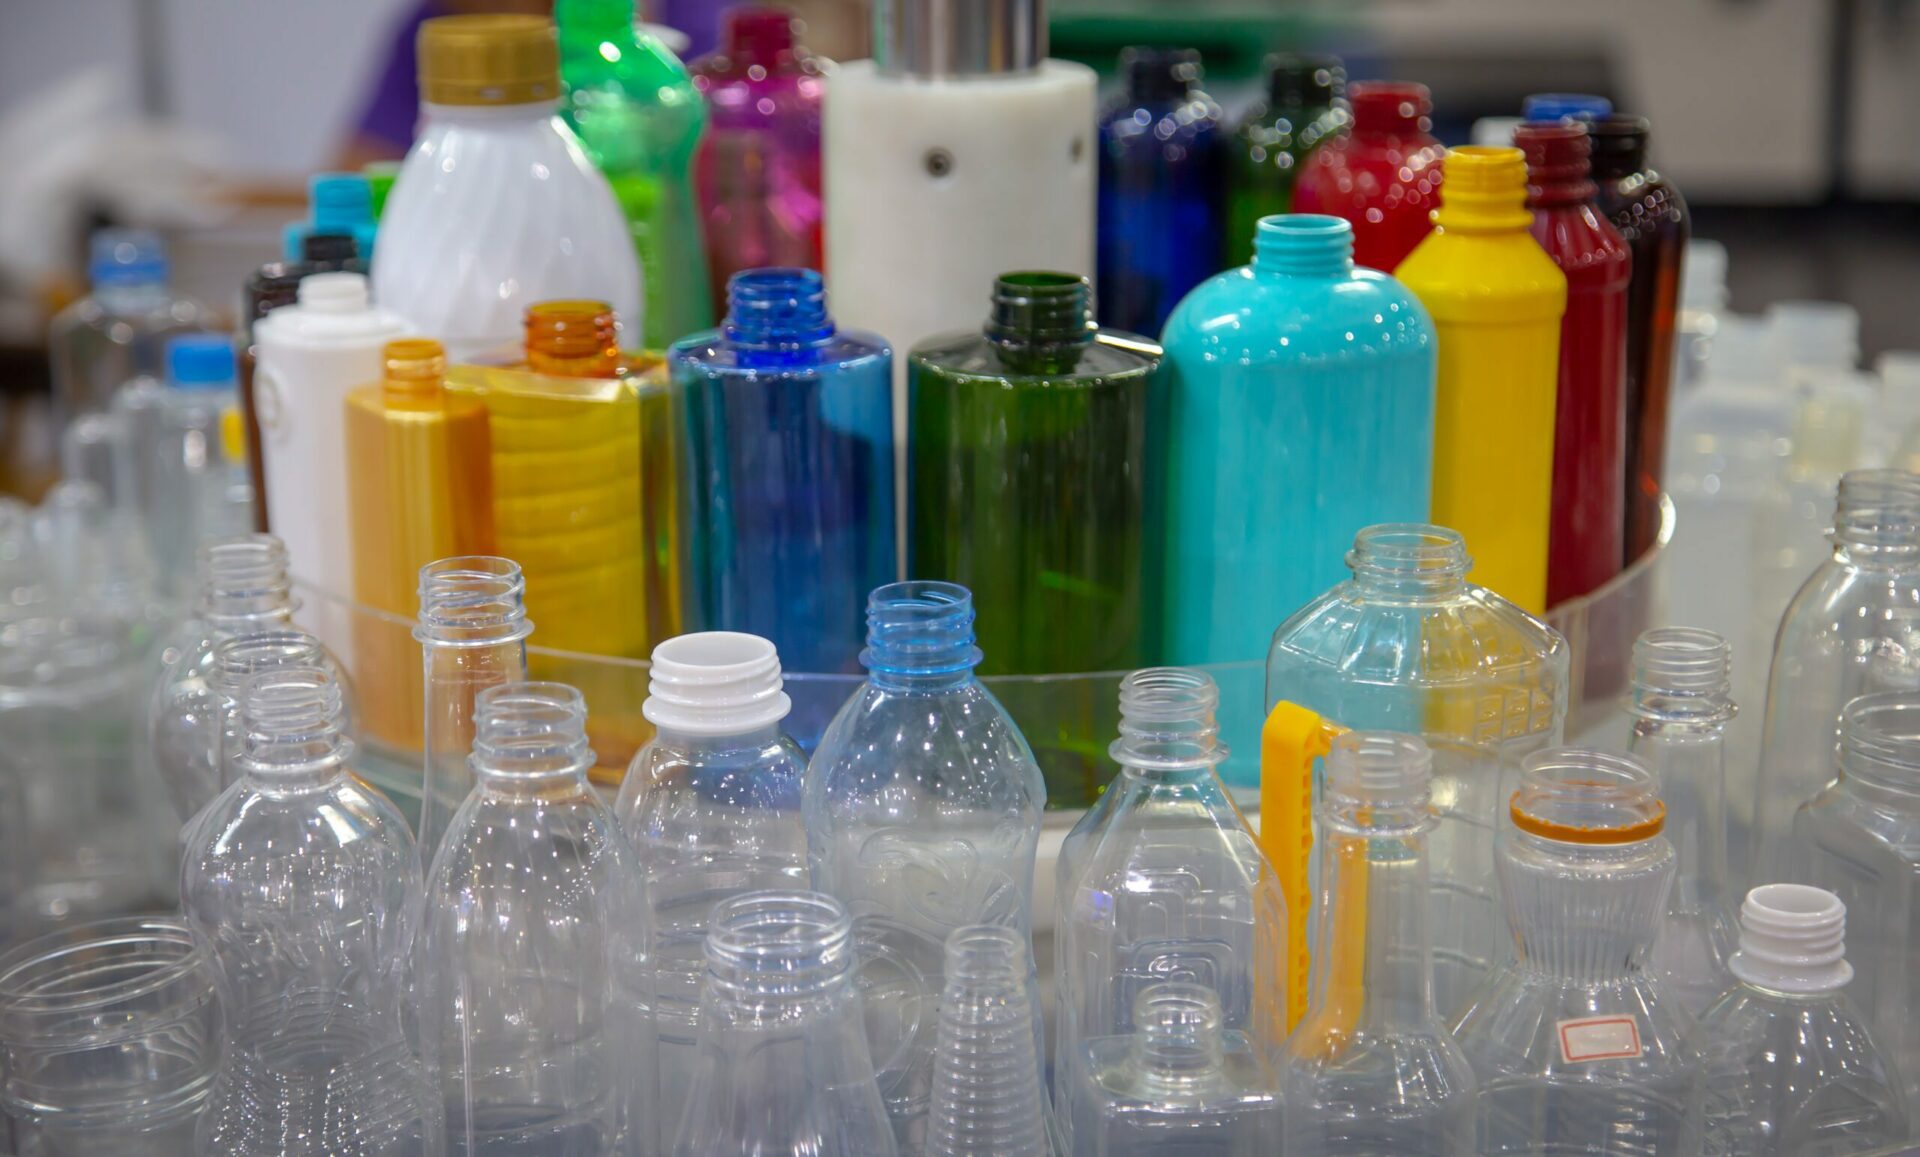 マイクロプラスチックを含むプラスチック製品は、現在世界的に揺るぎない存在であり、環境中に EDC を浸出させているため、懸念されています。